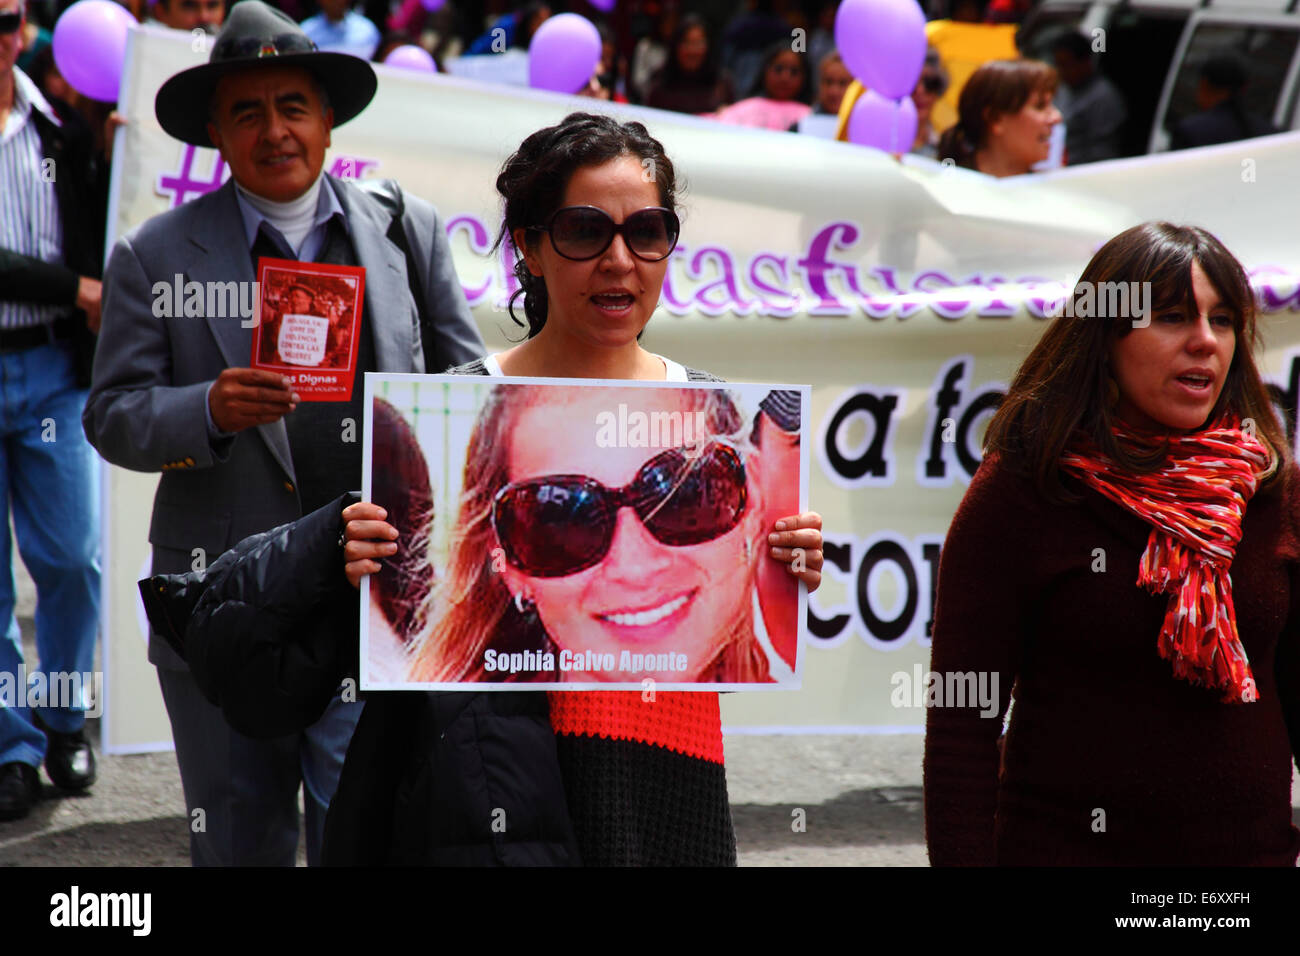 La Paz, Bolivien, 1. September 2014. Eine Frau hält ein Foto von Sophia Calvo Aponte während eines Marsches zum protest gegen Gewalt gegen Frauen und Machismo. Sophia starb im August in Santa Cruz. Der Marsch war auch die jüngsten Erklärungen mehrere politische Kandidaten im aktuellen Wahlkampf zurückweise, die angezeigt werden, das Problem zu minimieren. Laut einem Bericht der WHO im Januar 2013 Bolivien ist das Land mit der höchsten Rate der Gewalt gegen Frauen in Lateinamerika, wurden seit 2006 453 Fälle von Frauenmorde in der aktuellen Regierung. Bildnachweis: James Brunker / Alamy Live N Stockfoto